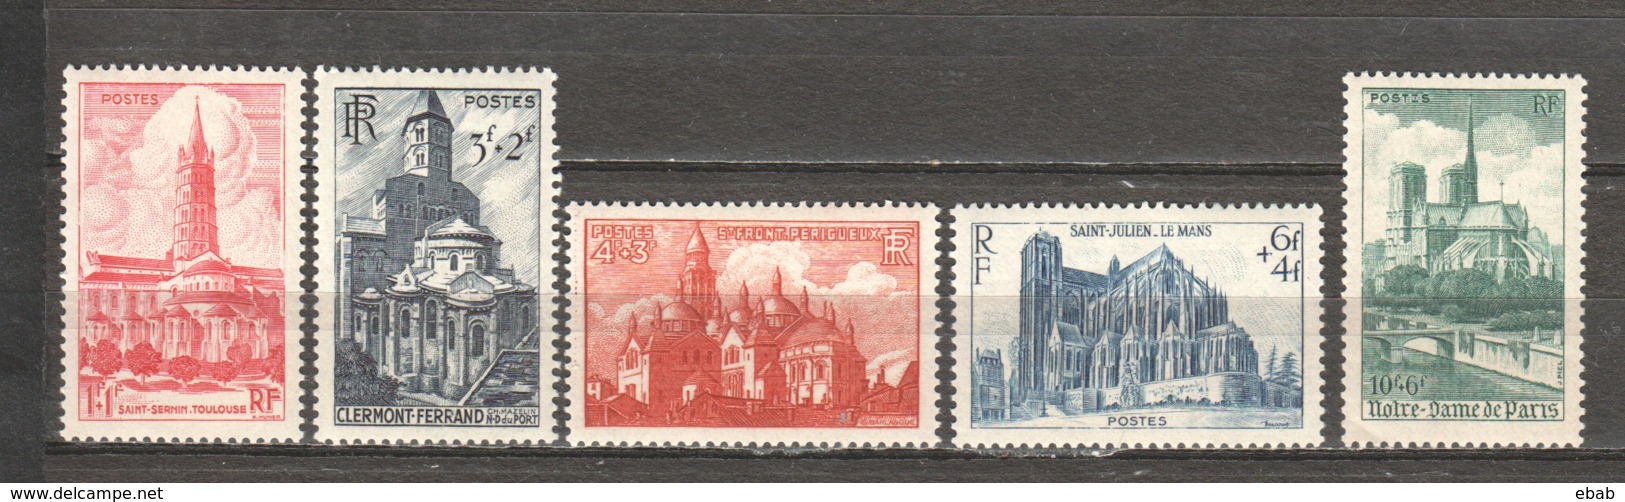 France 1947 Mi 773-777 MNH - Unused Stamps